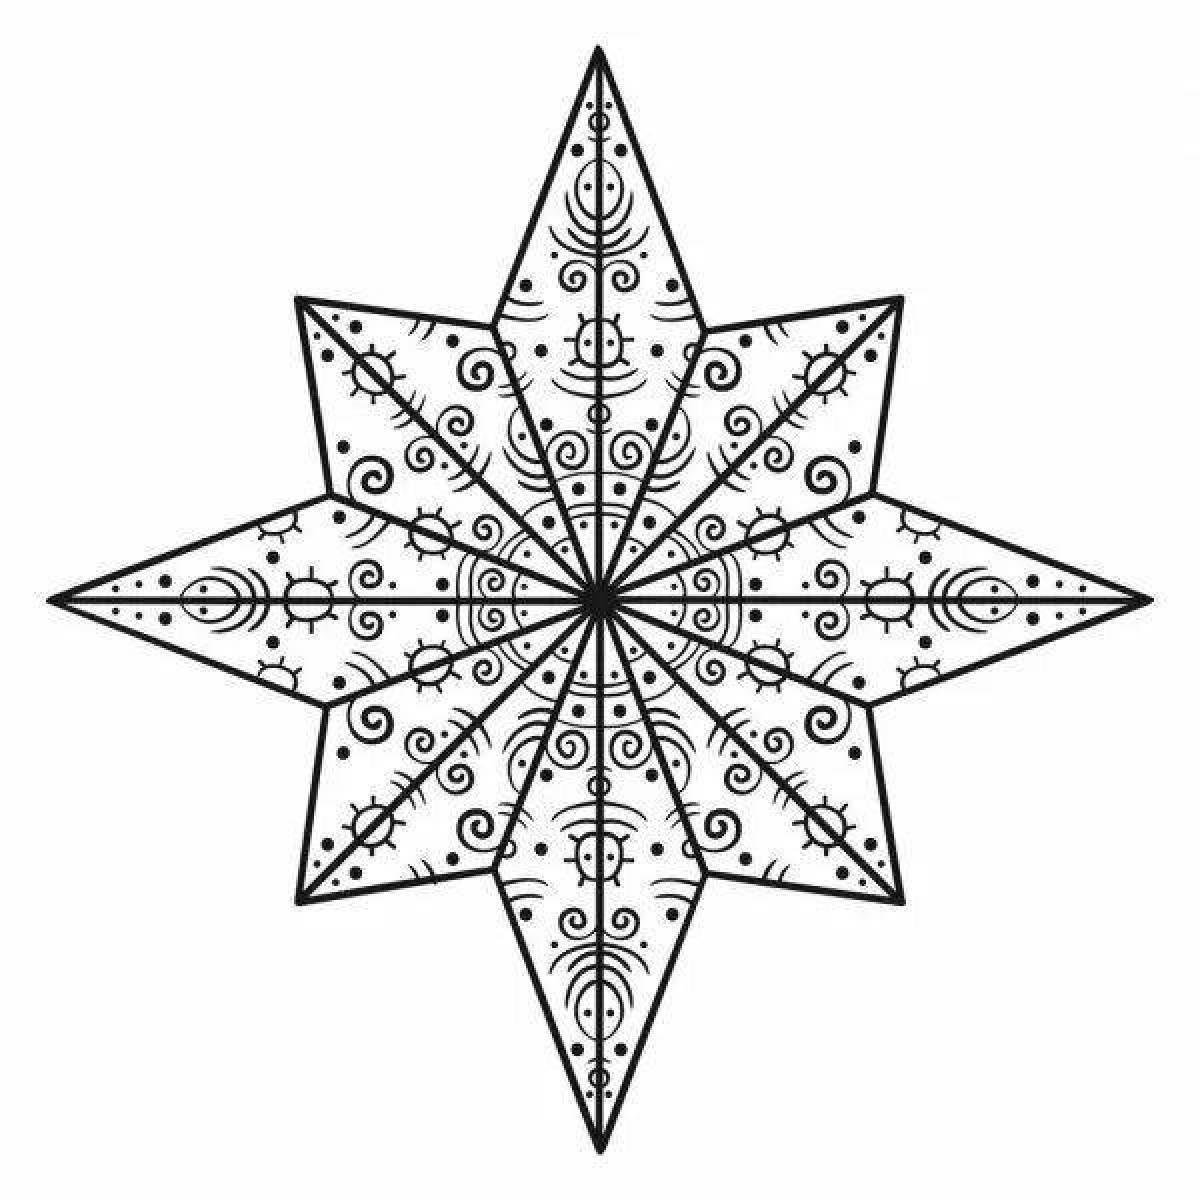 Интригующая страница раскраски восьмиконечной звезды